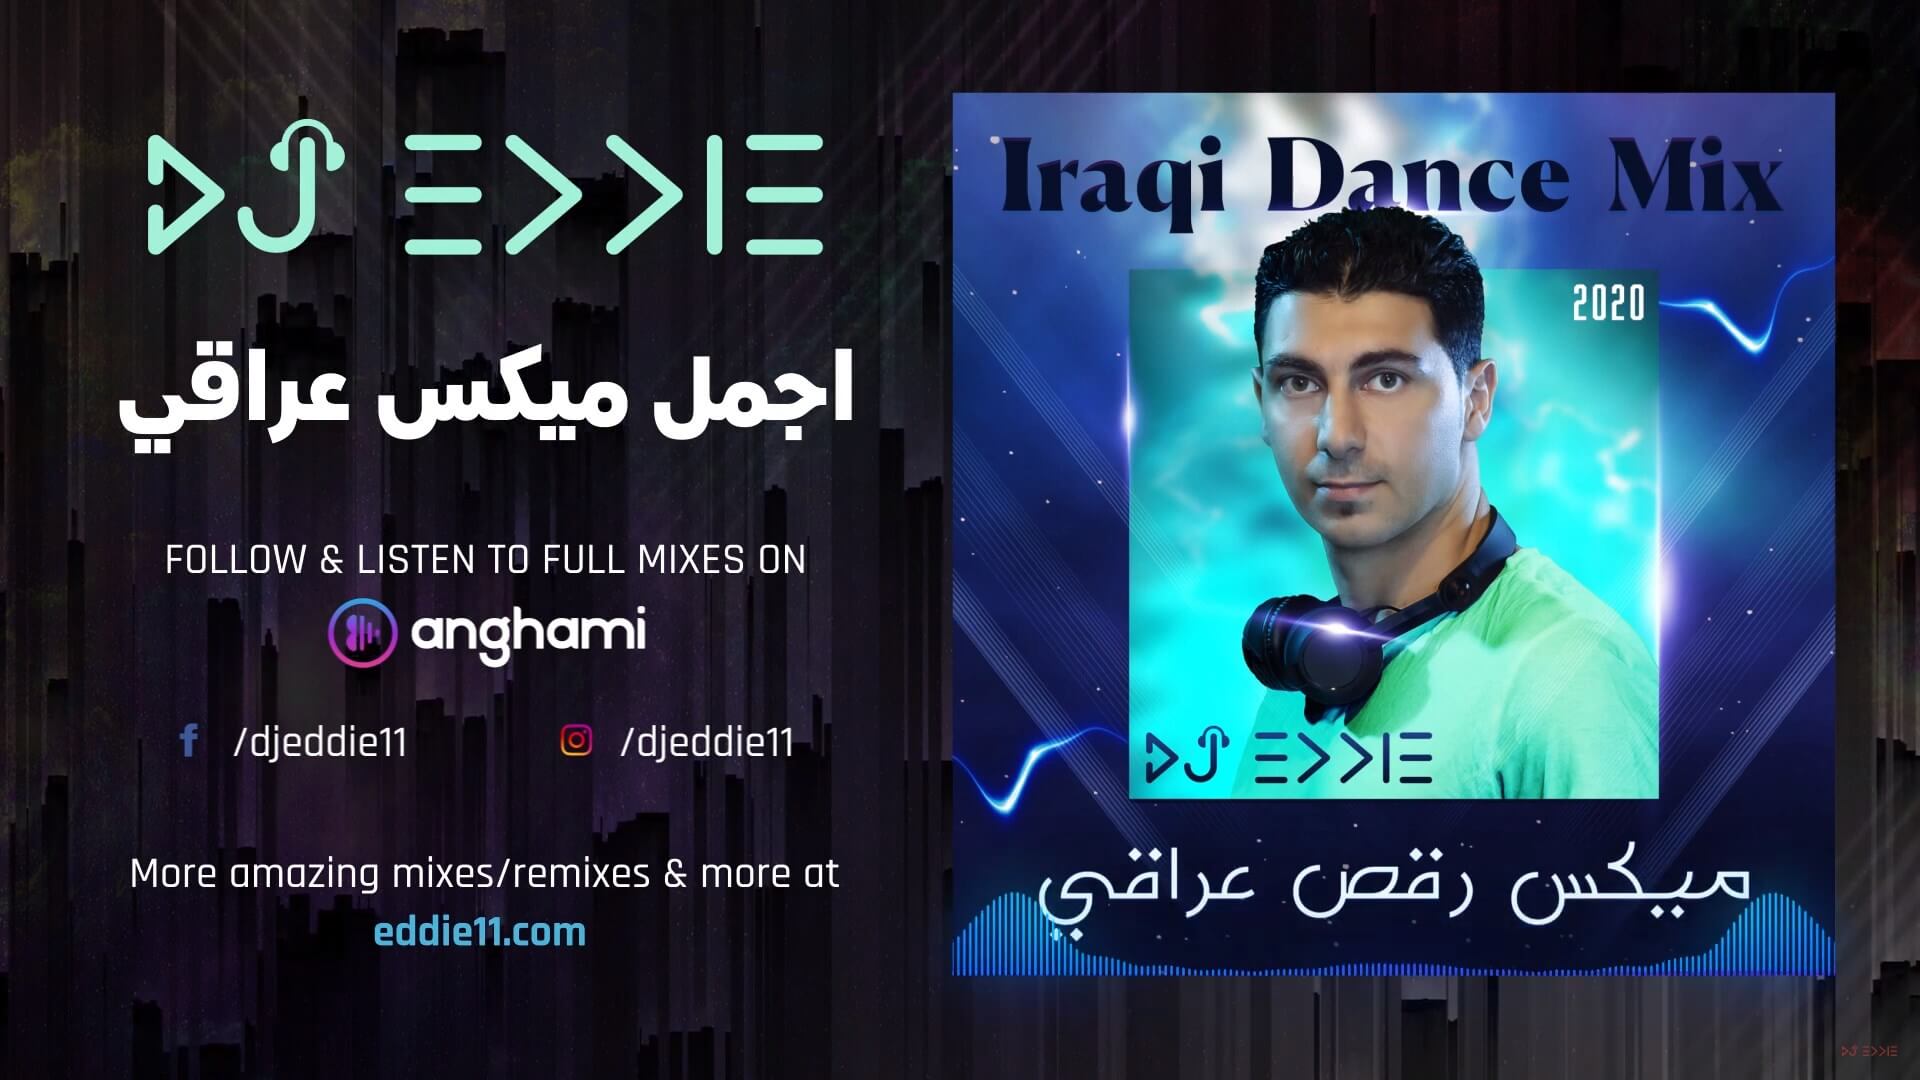 Iraqi Party Dance Mix 2021 New Year Mix DJ Eddie اجمل ميكس رقص عراقي